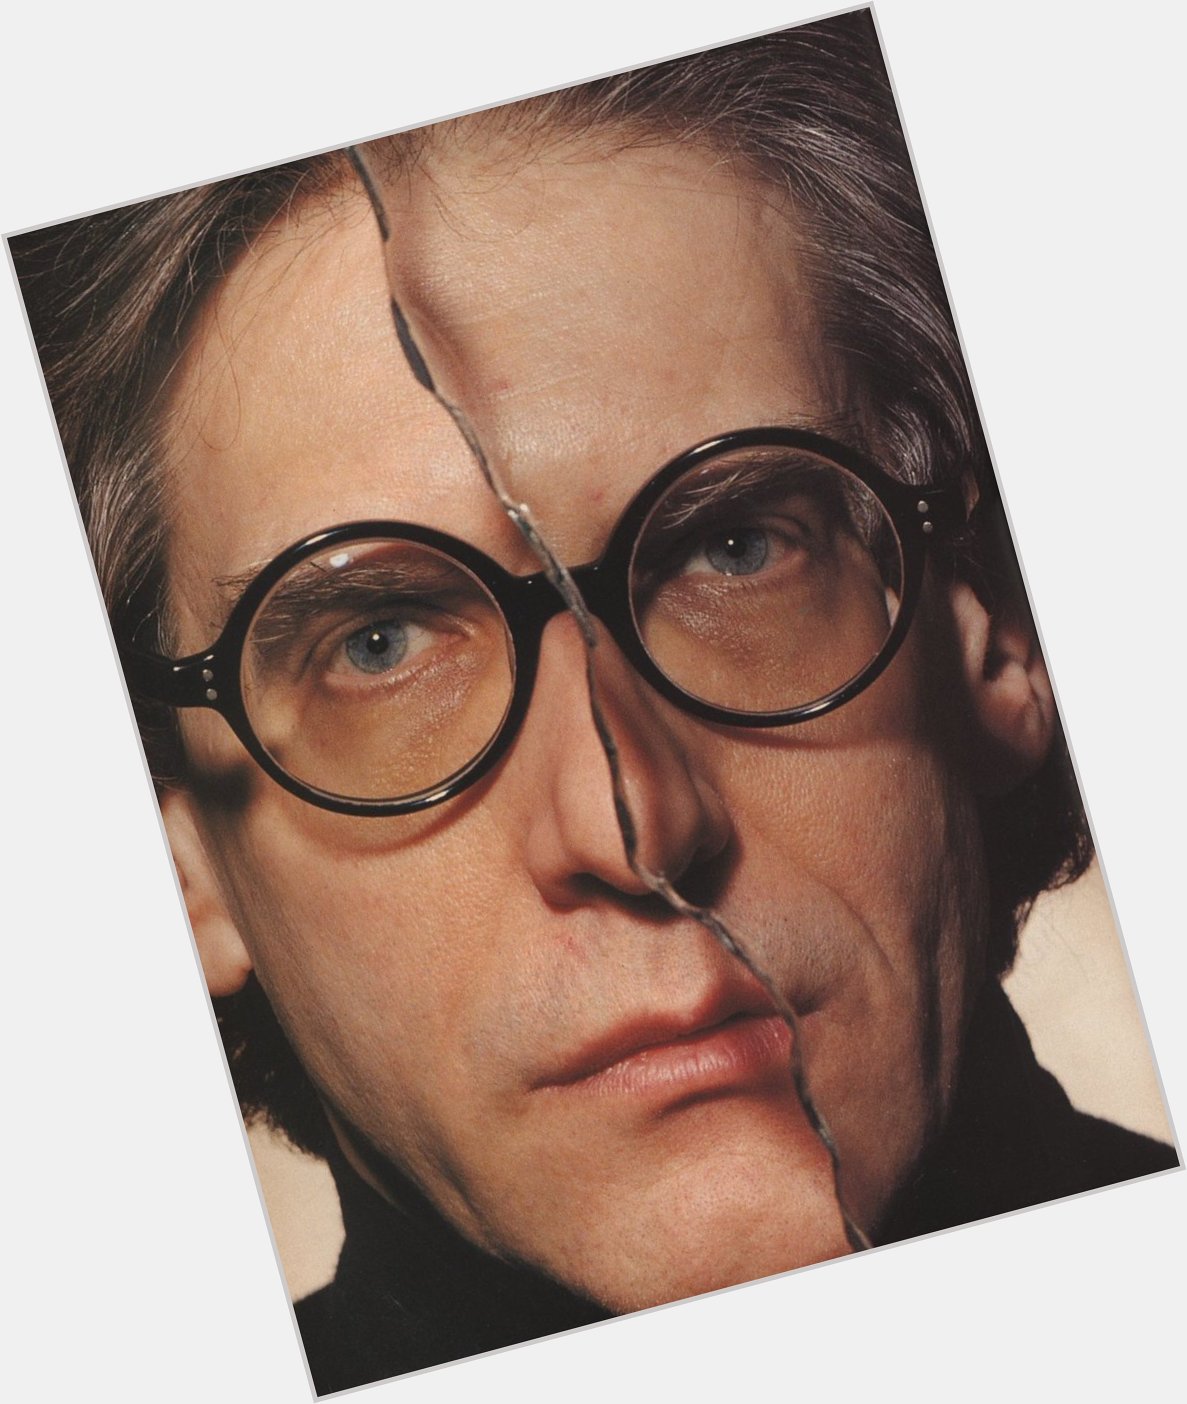 Happy 79th birthday to David Cronenberg! 